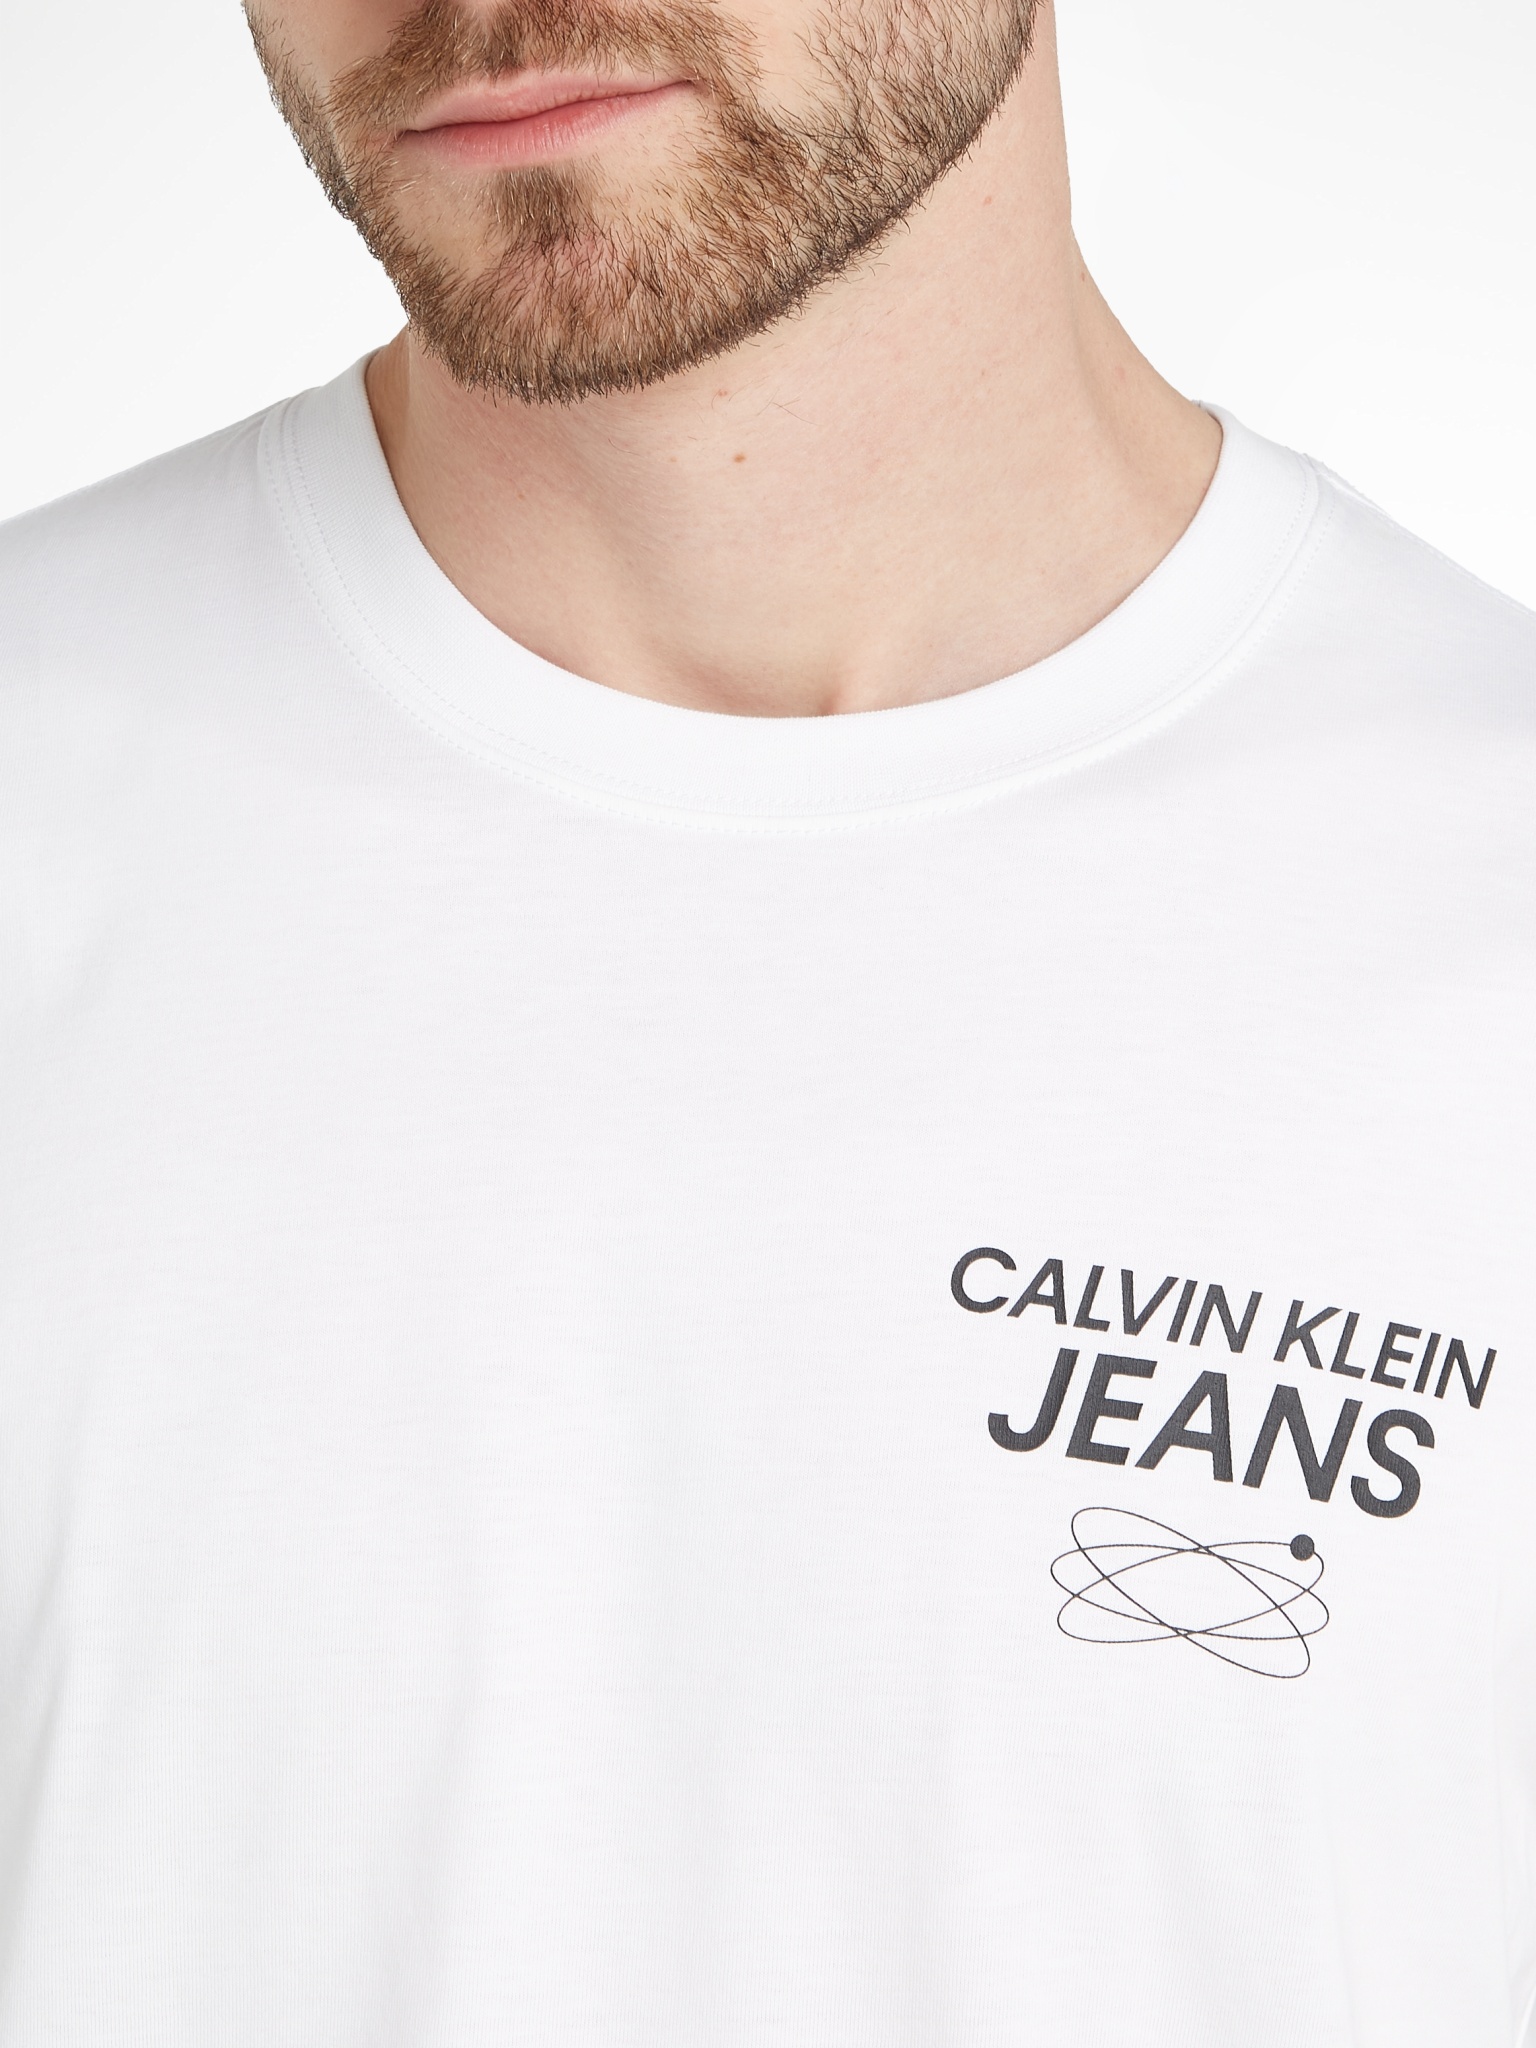 CALVIN KLEIN JEANS T-Shirt aus Baumwolle mit Logo am Rücken 10716438 kaufen  | WÖHRL